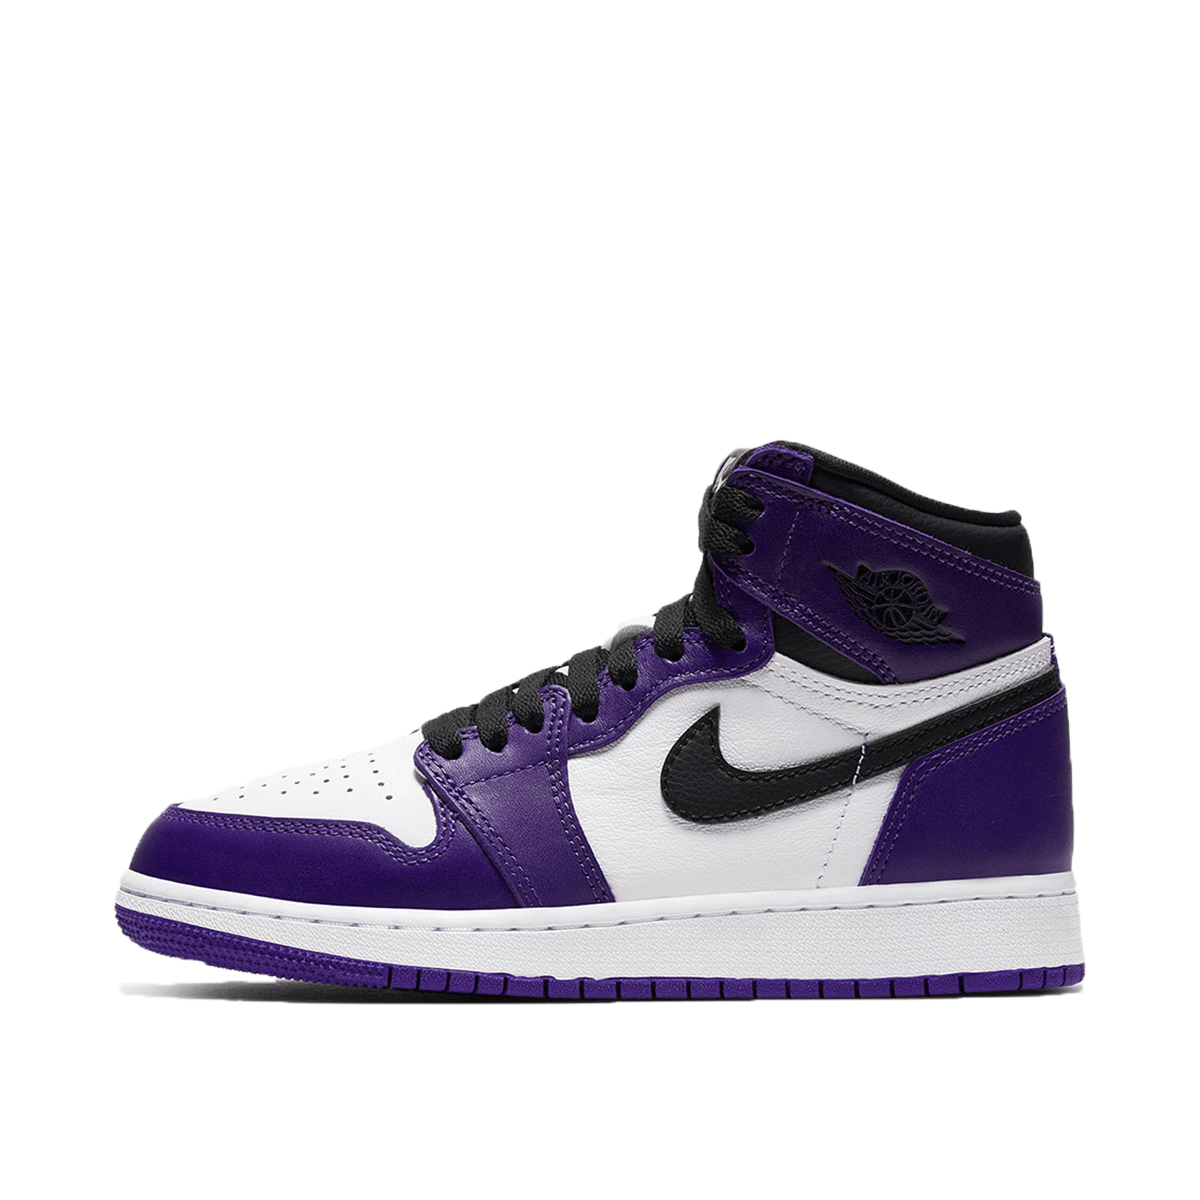 air jordan 1 retro high court purple white